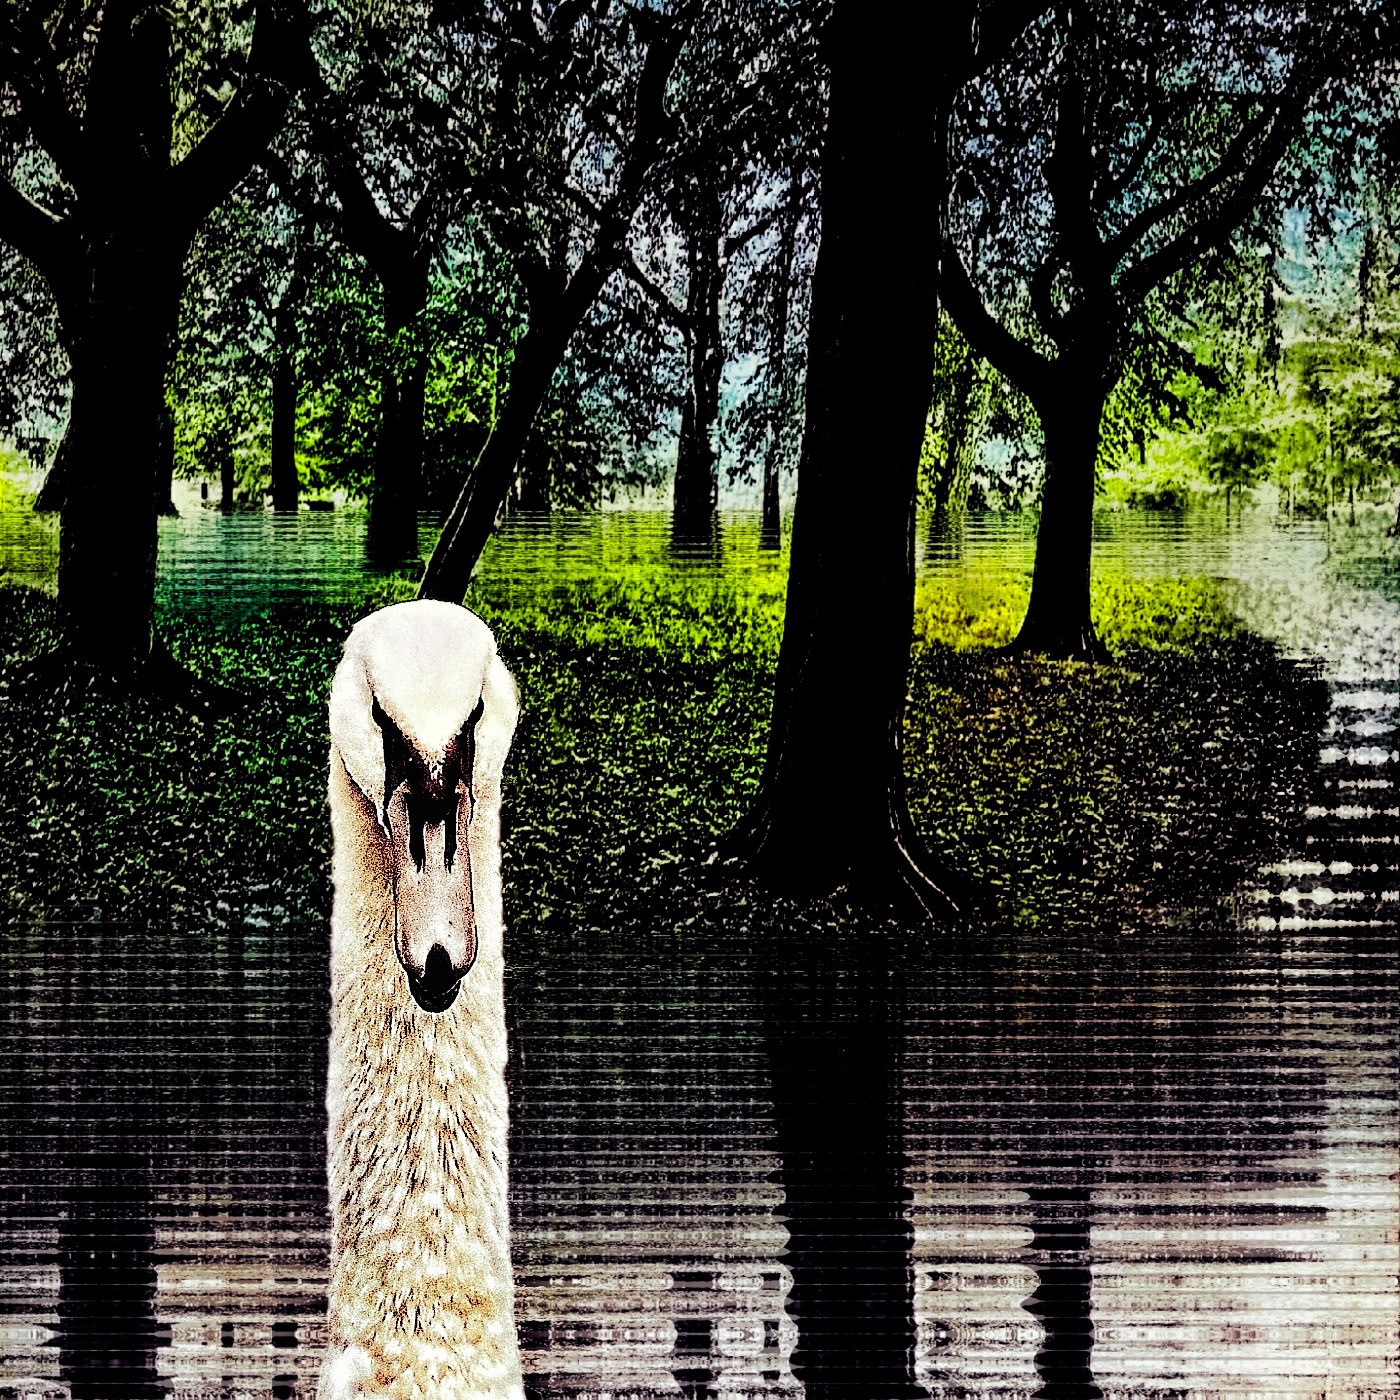 Een zwaan in een fantasy-park, in deze digitale fotocollage van Ruben van Gogh